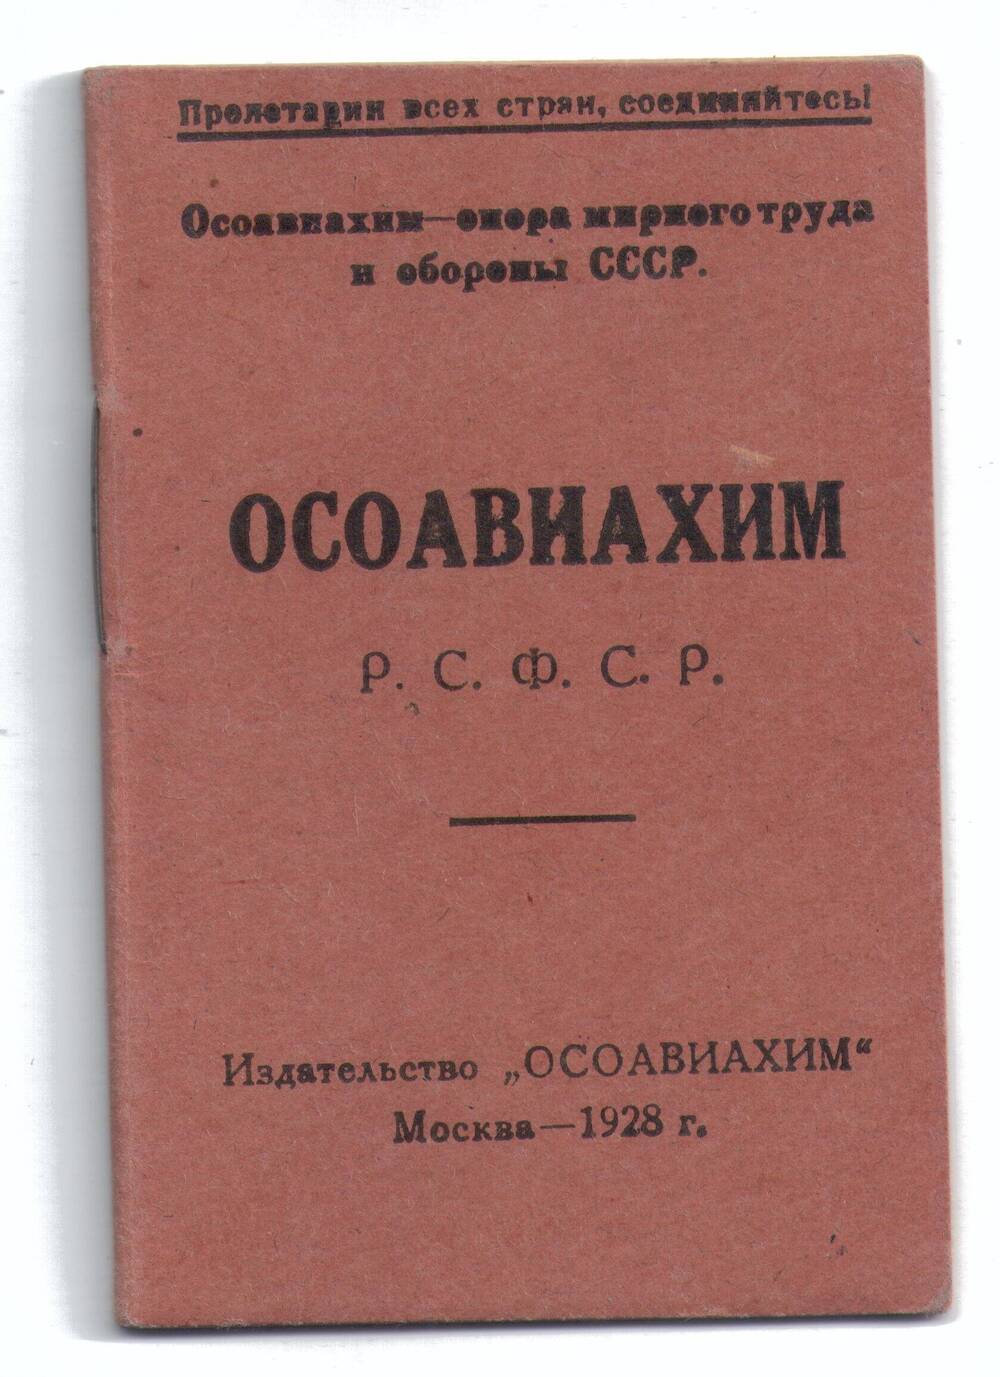 Членский билет №3491047
ОСОАВИАХИМ
Горохова Михаила Евдокимовича